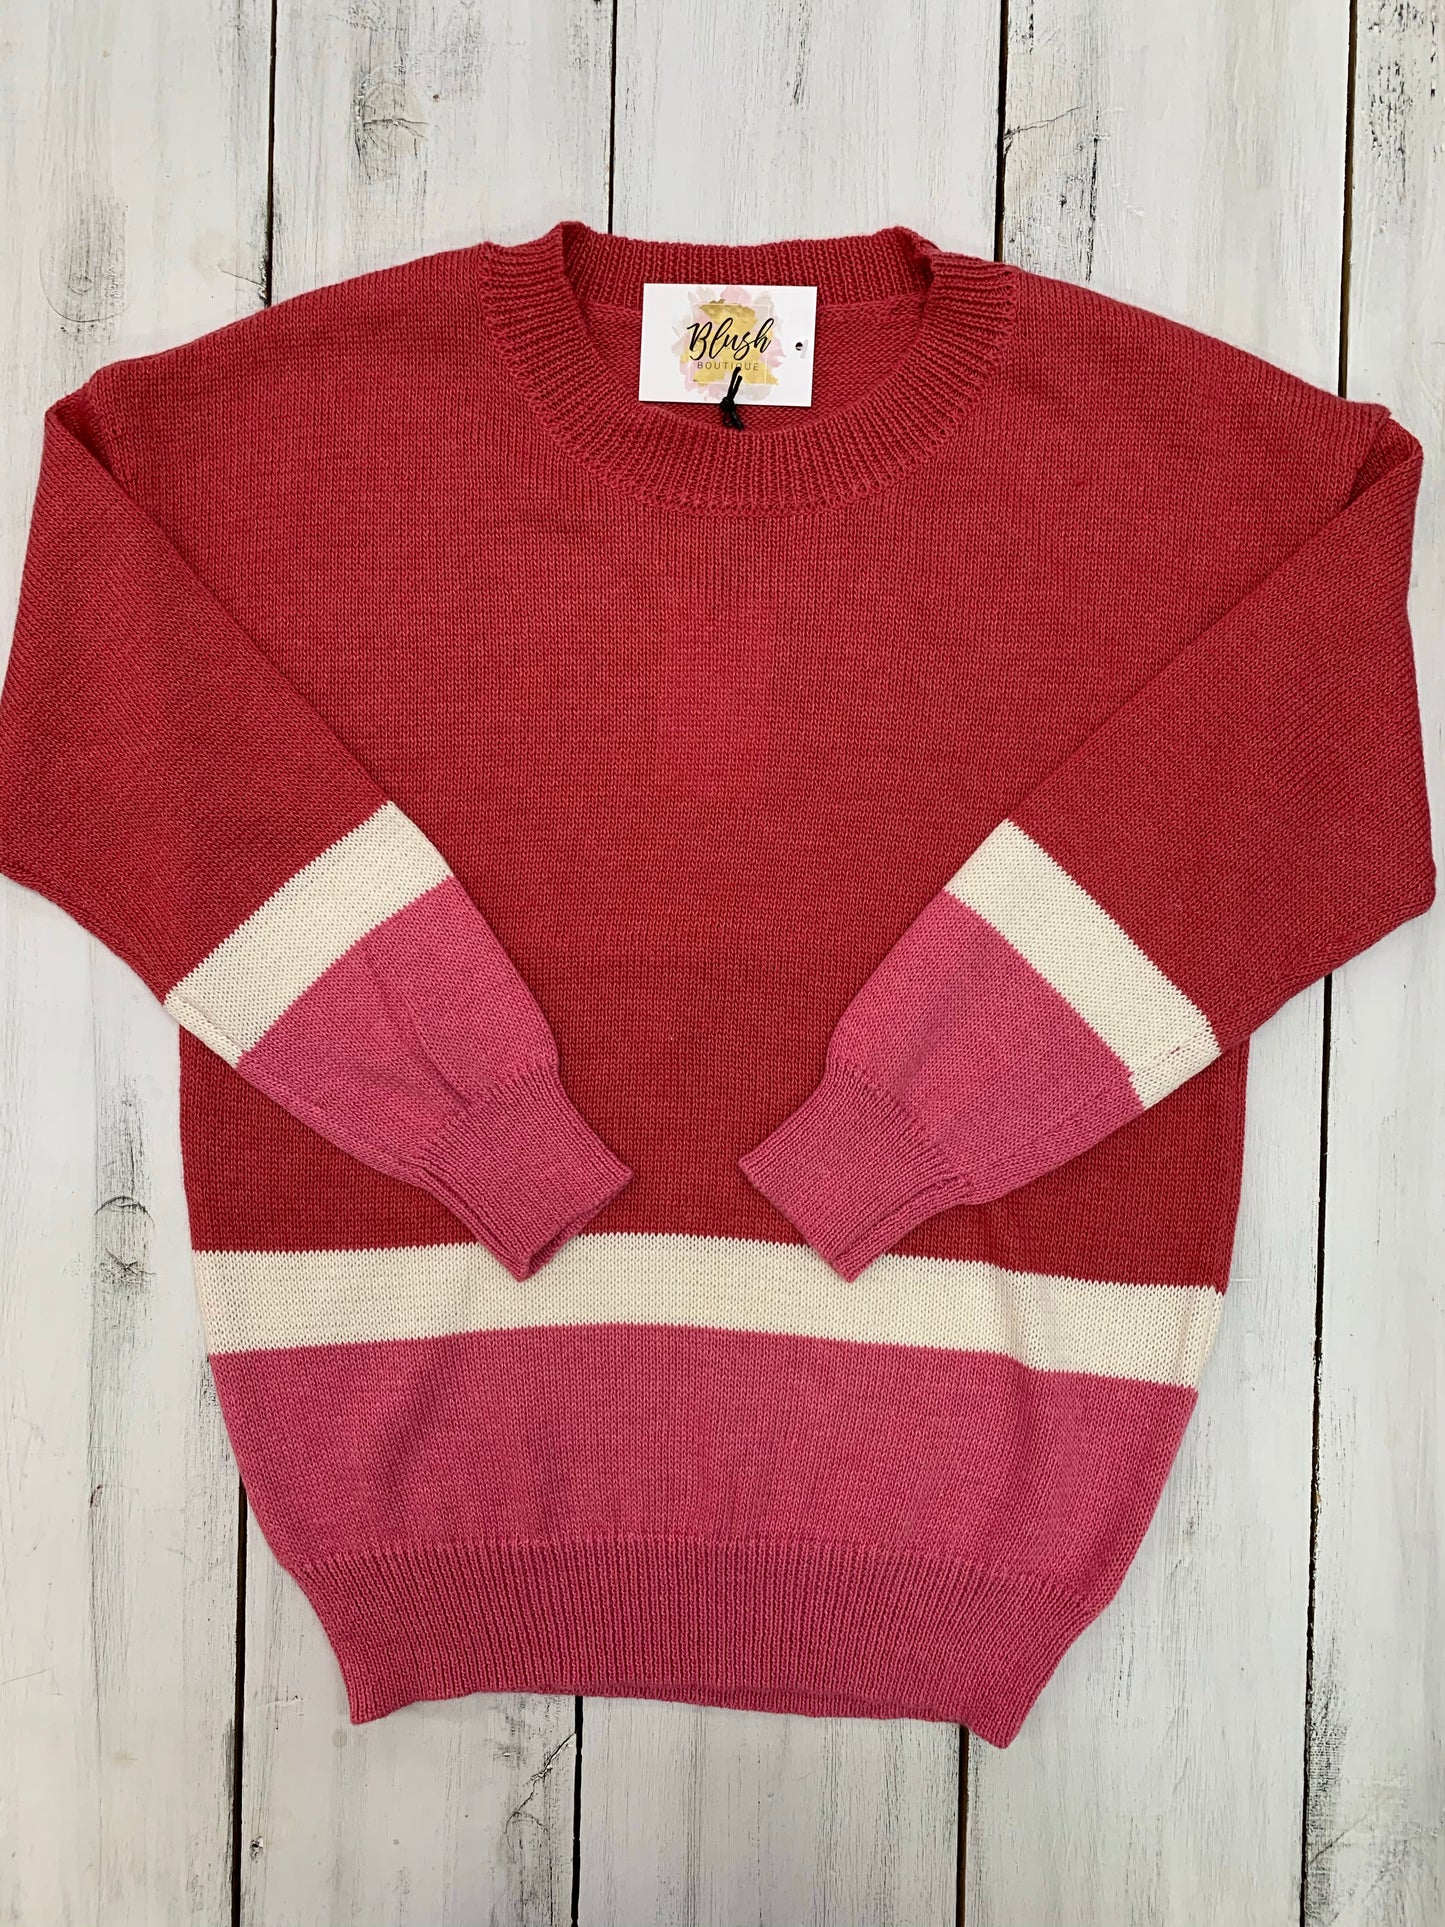 Curvy Spring Block Sweater